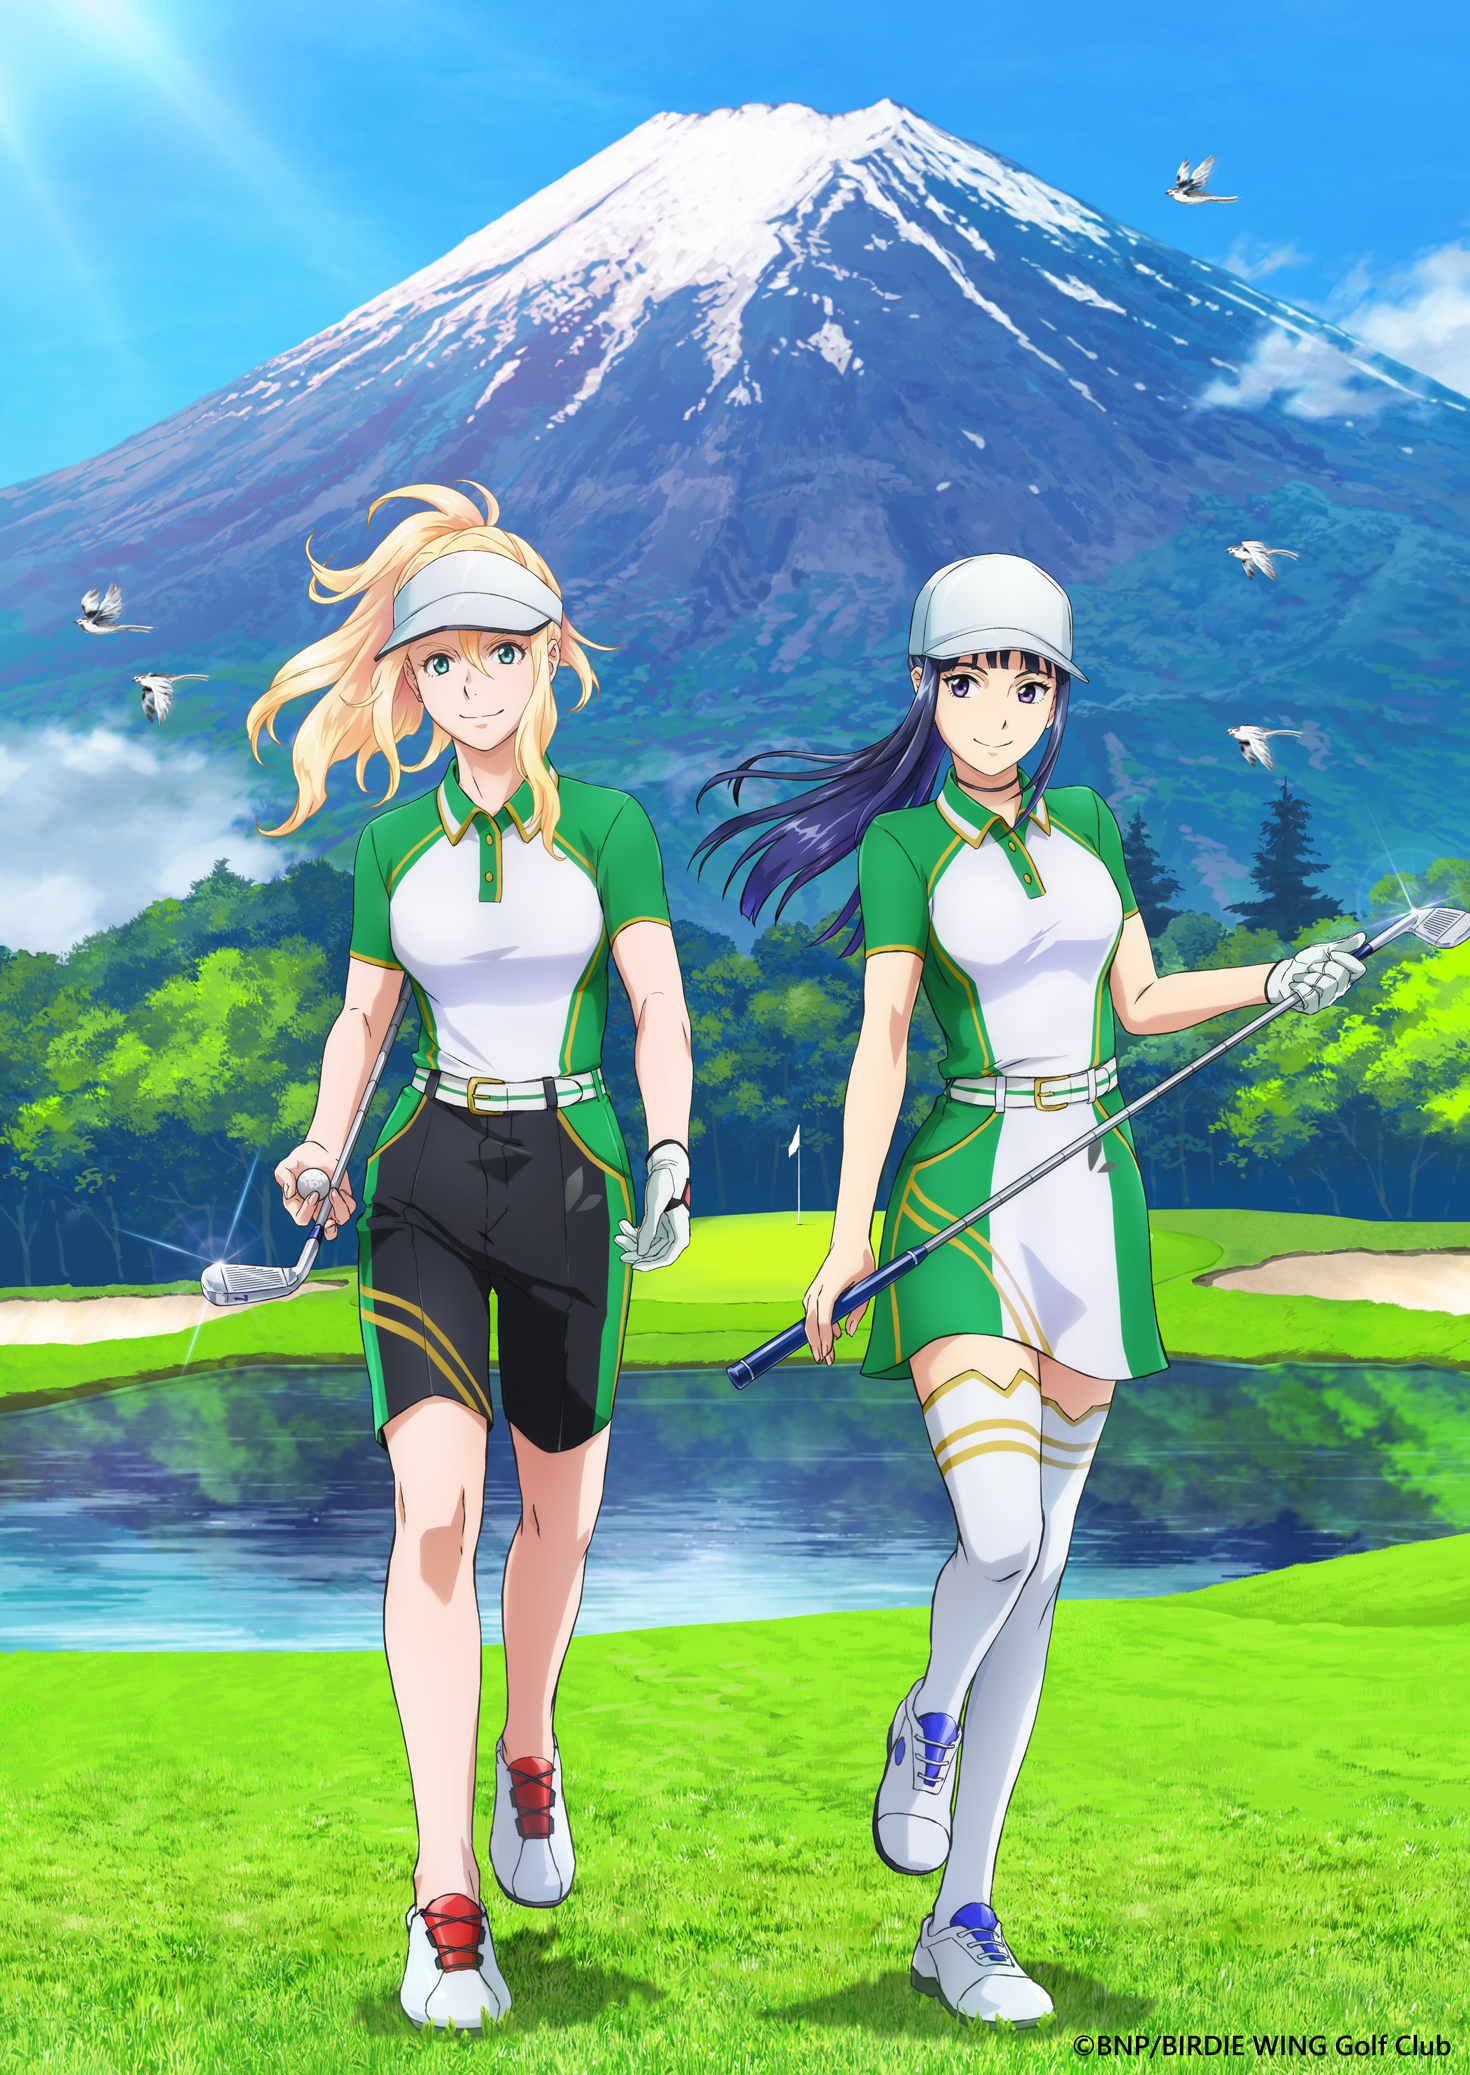 『BIRDIE WING -Golf Girls' Story-』 Season 2